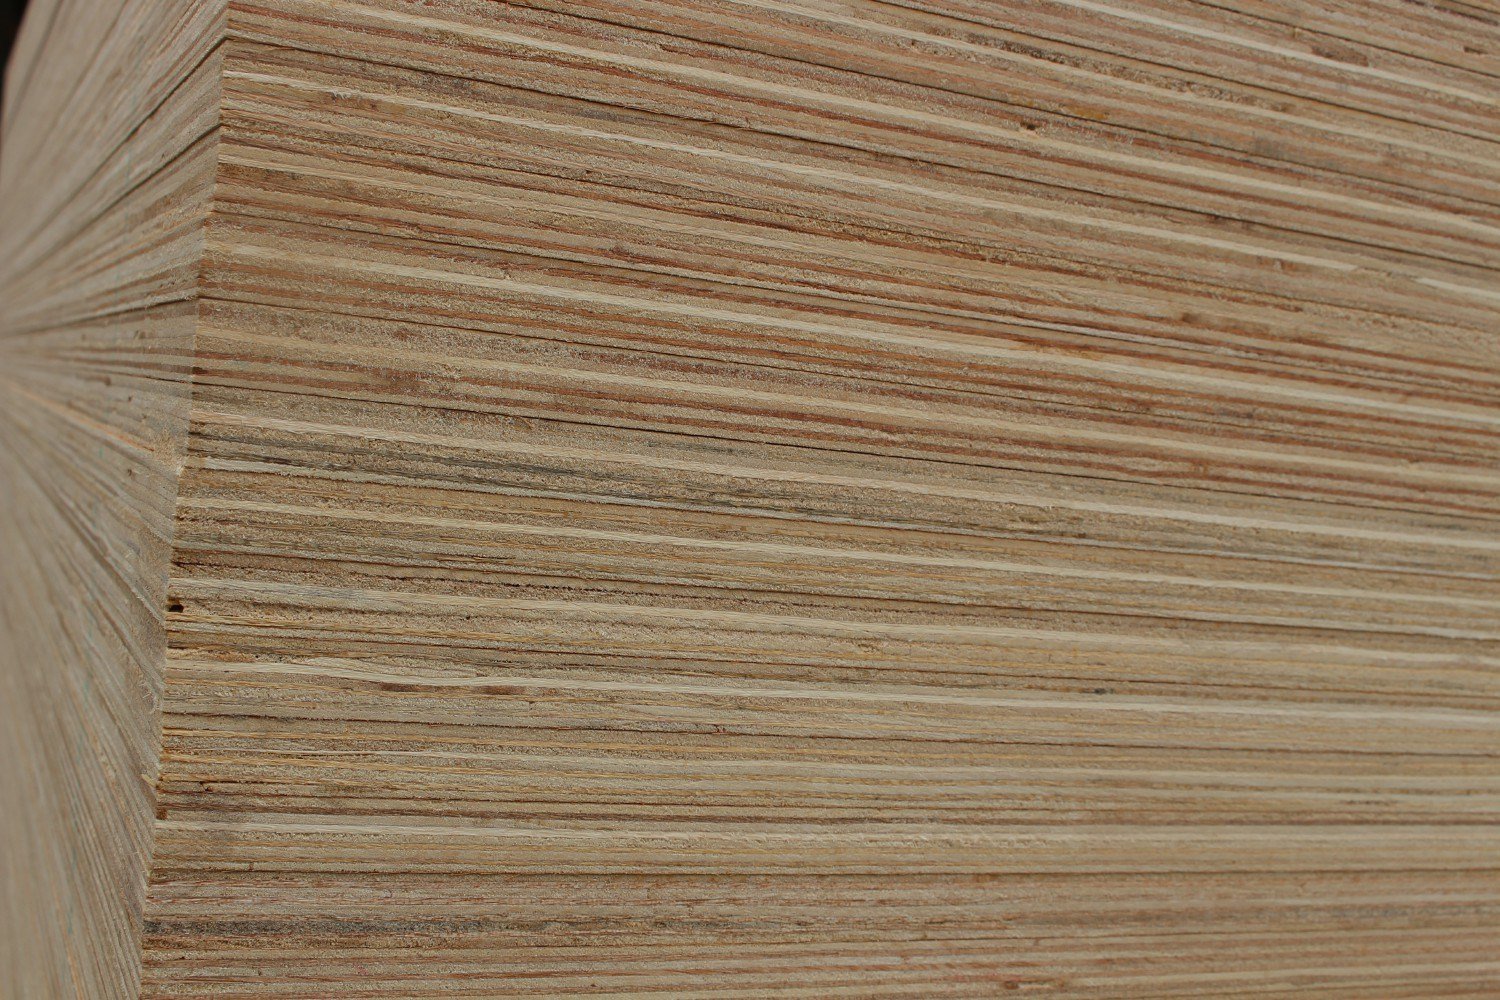 Furniture Grade Plywood E1 Glue